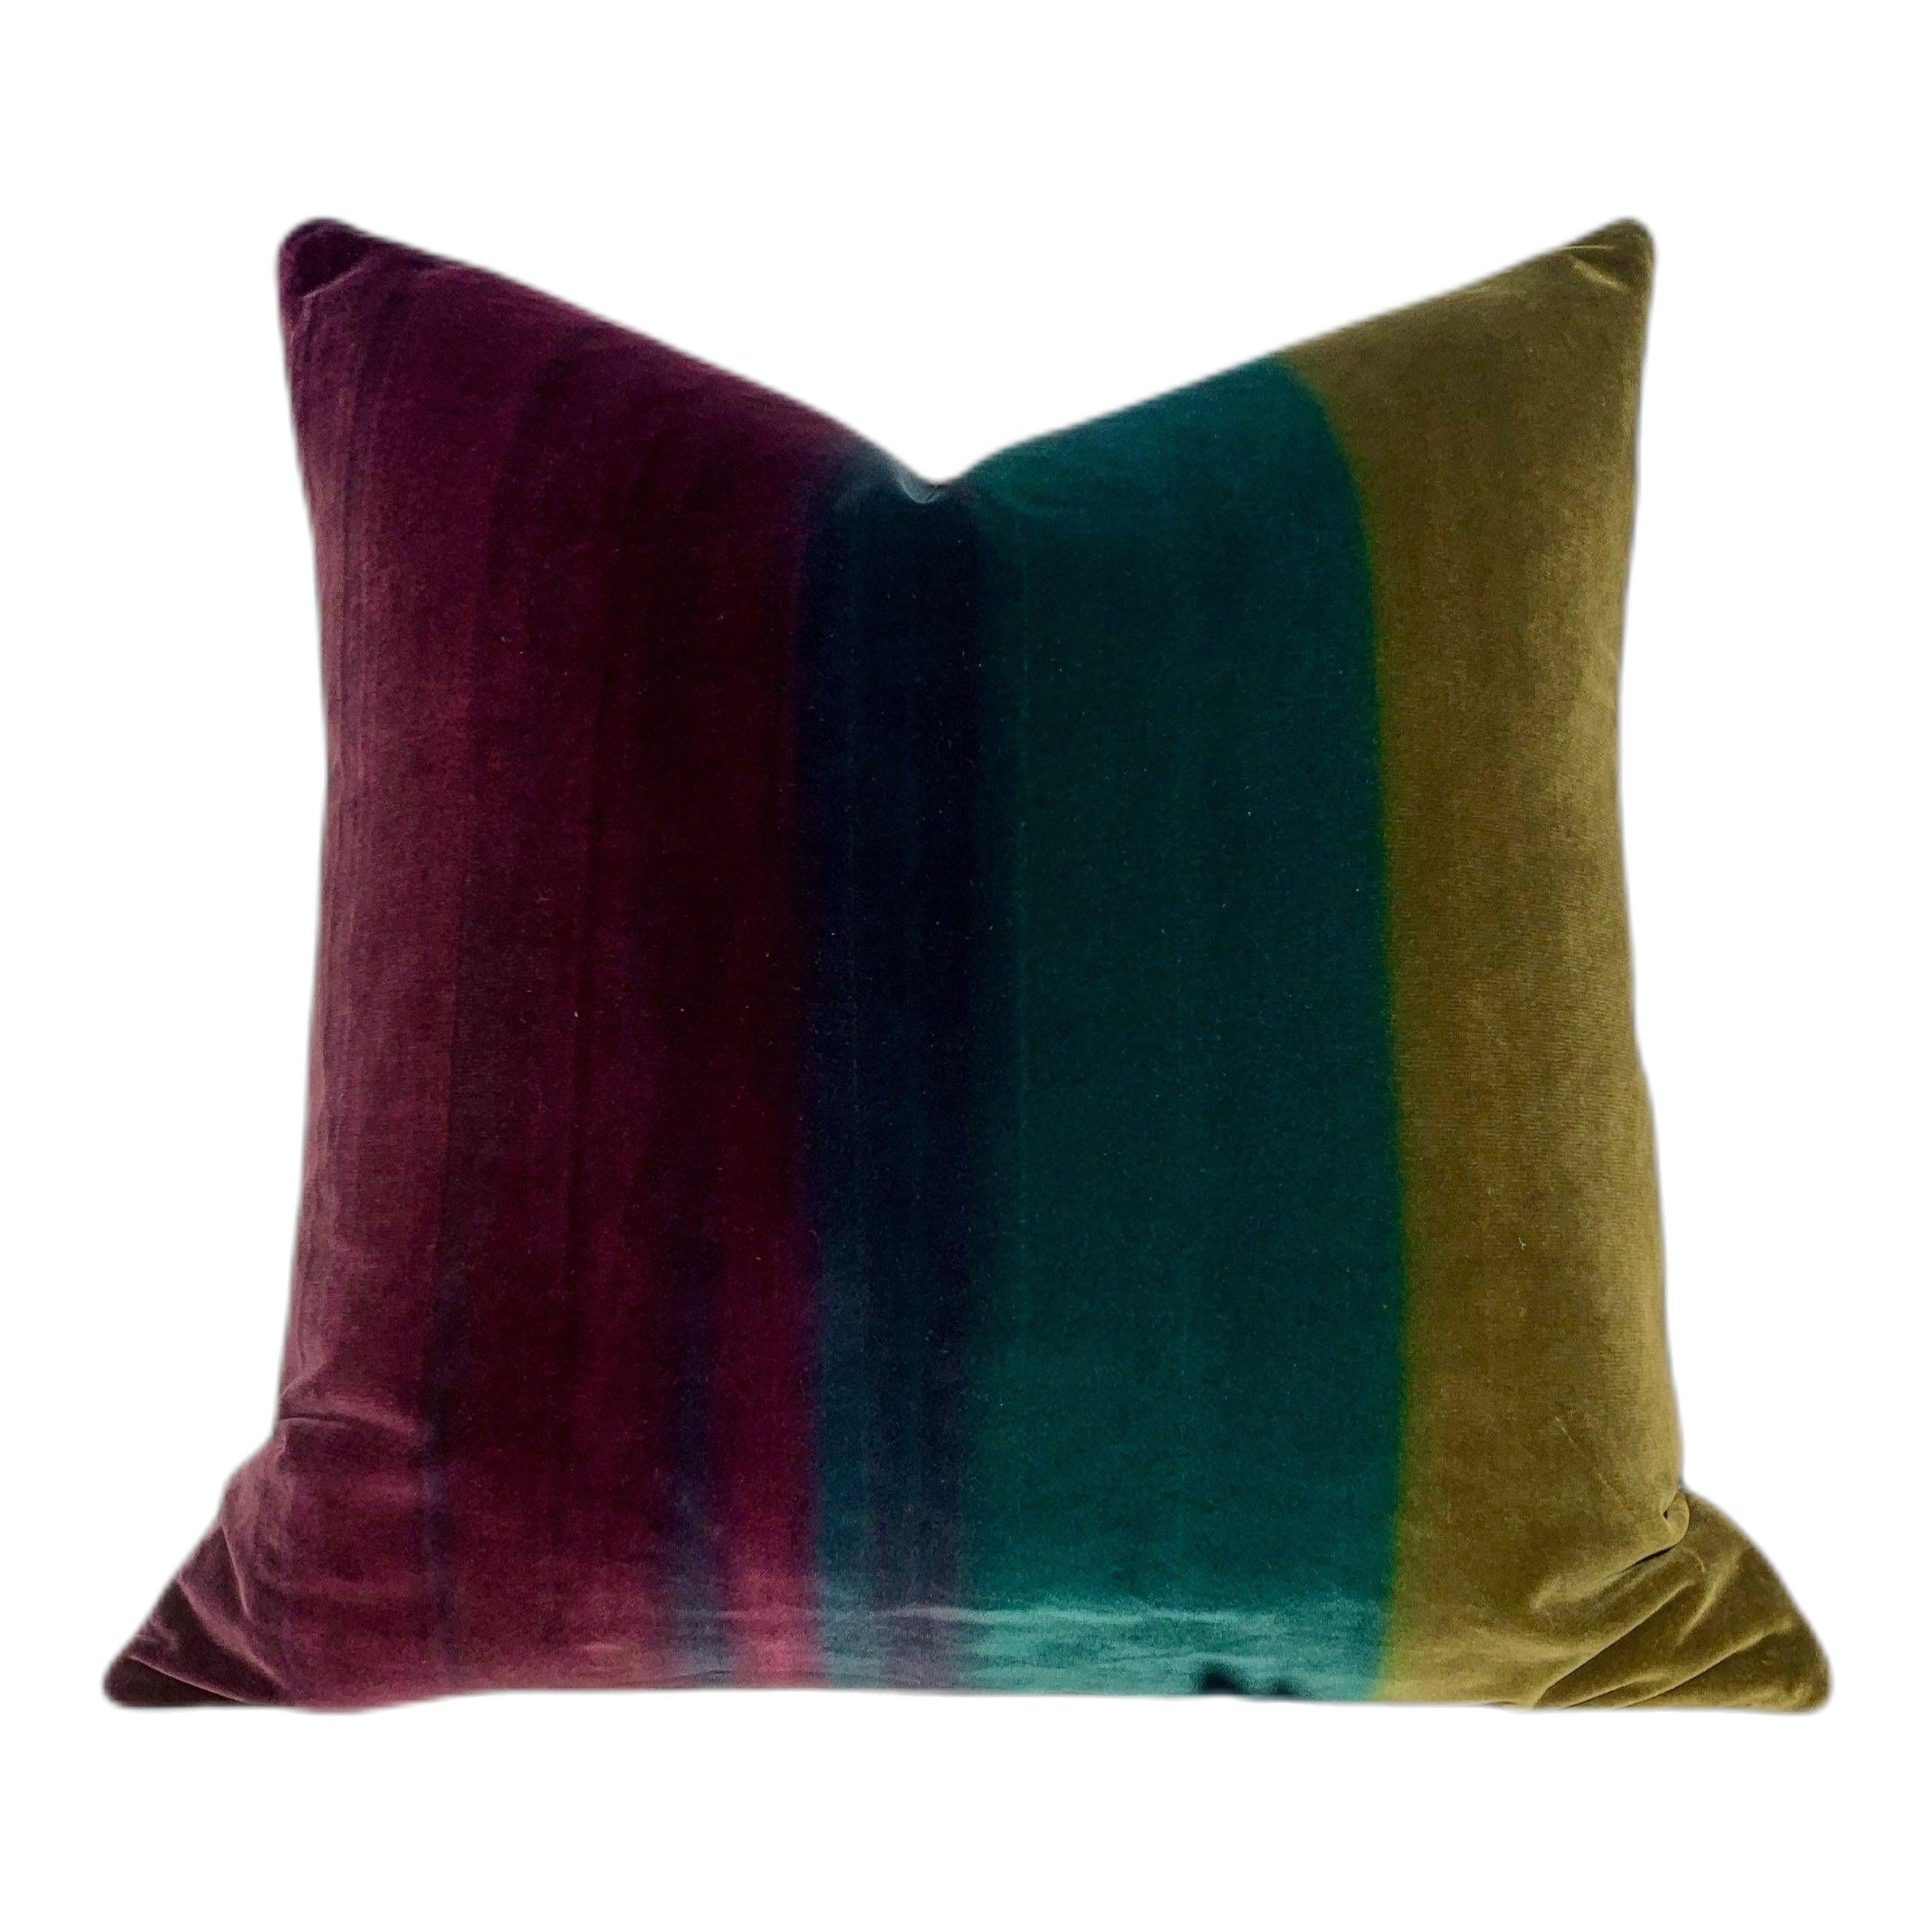 Amazilia Velvet Pillow in Gooseberry, Emerald, Loganberry. Lumbar Ombre Velvet Pillow